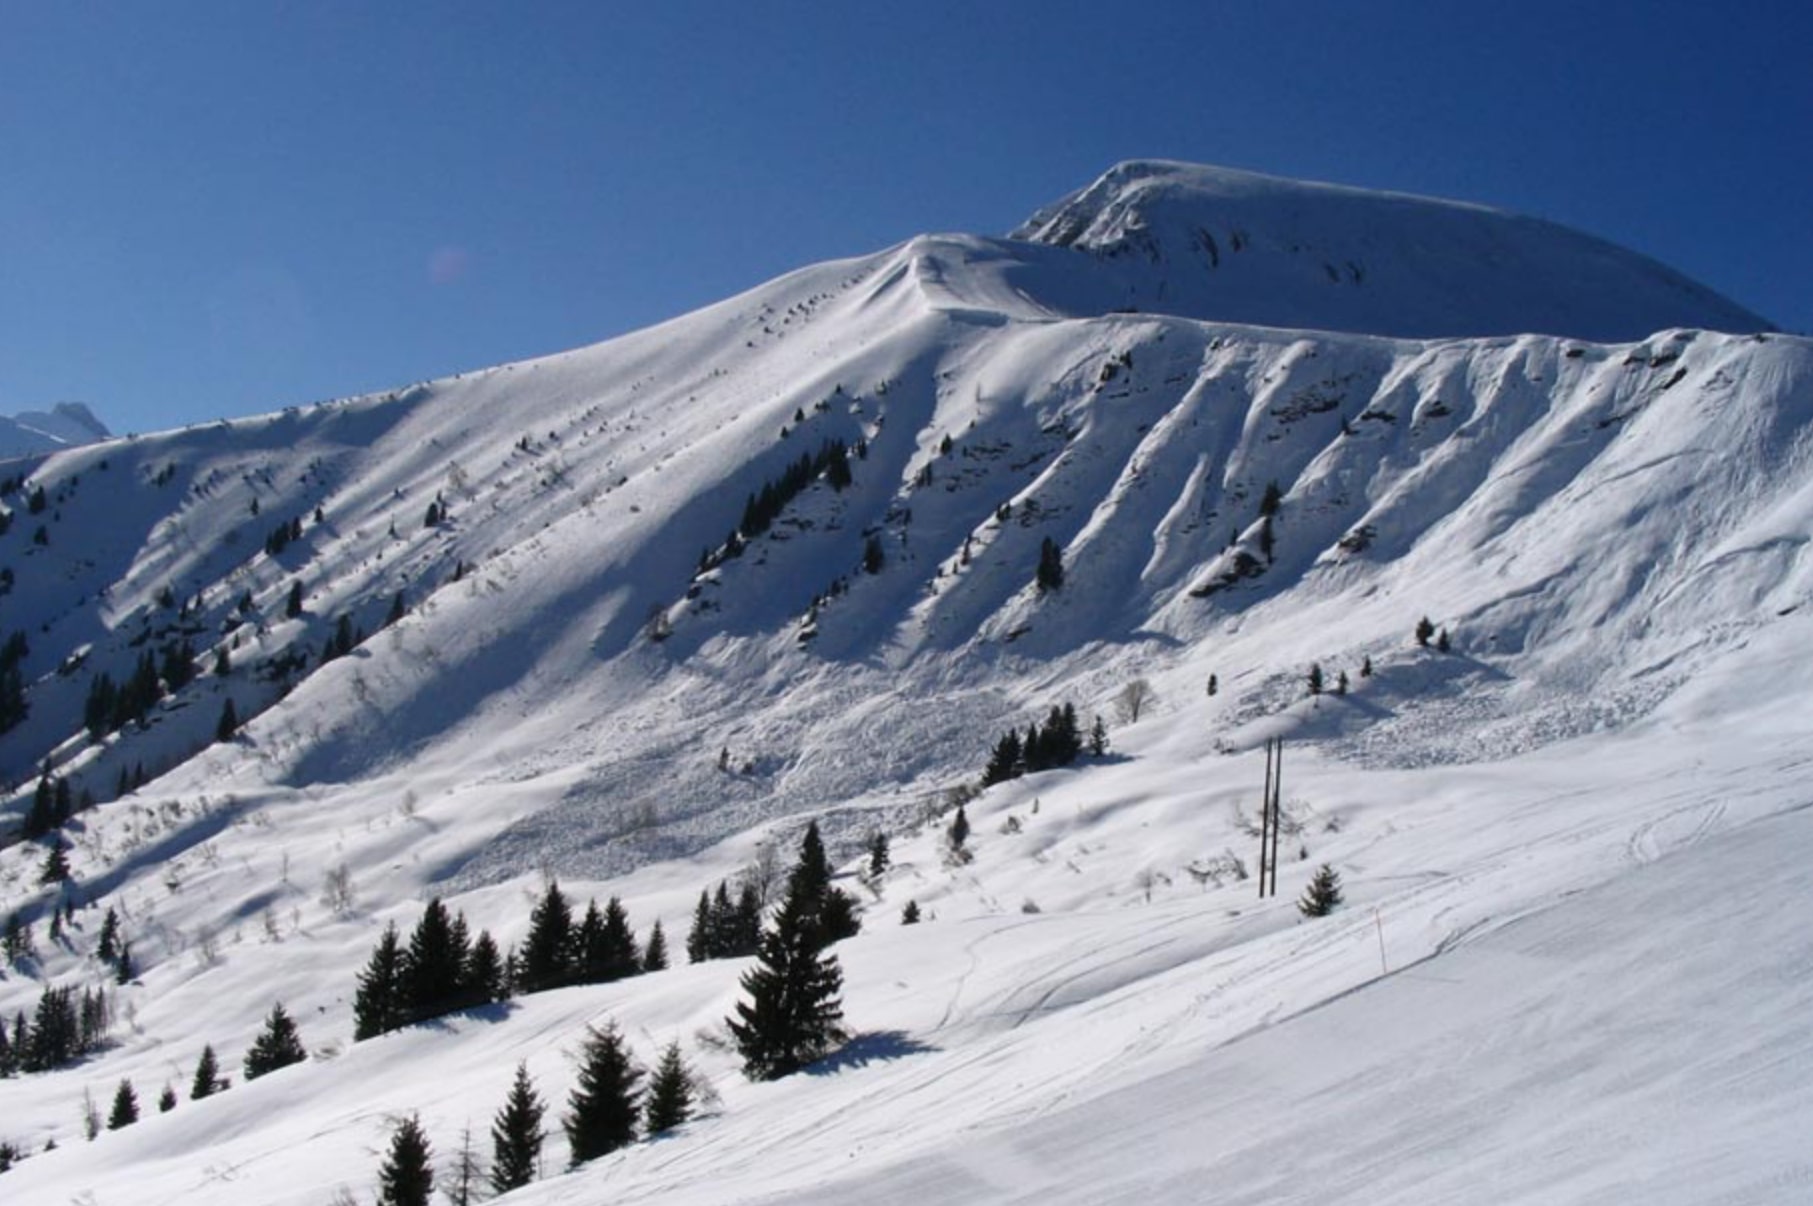 Britská matka a její syn byli zabiti ve francouzské lavině při lyžování s lyžařským instruktorem